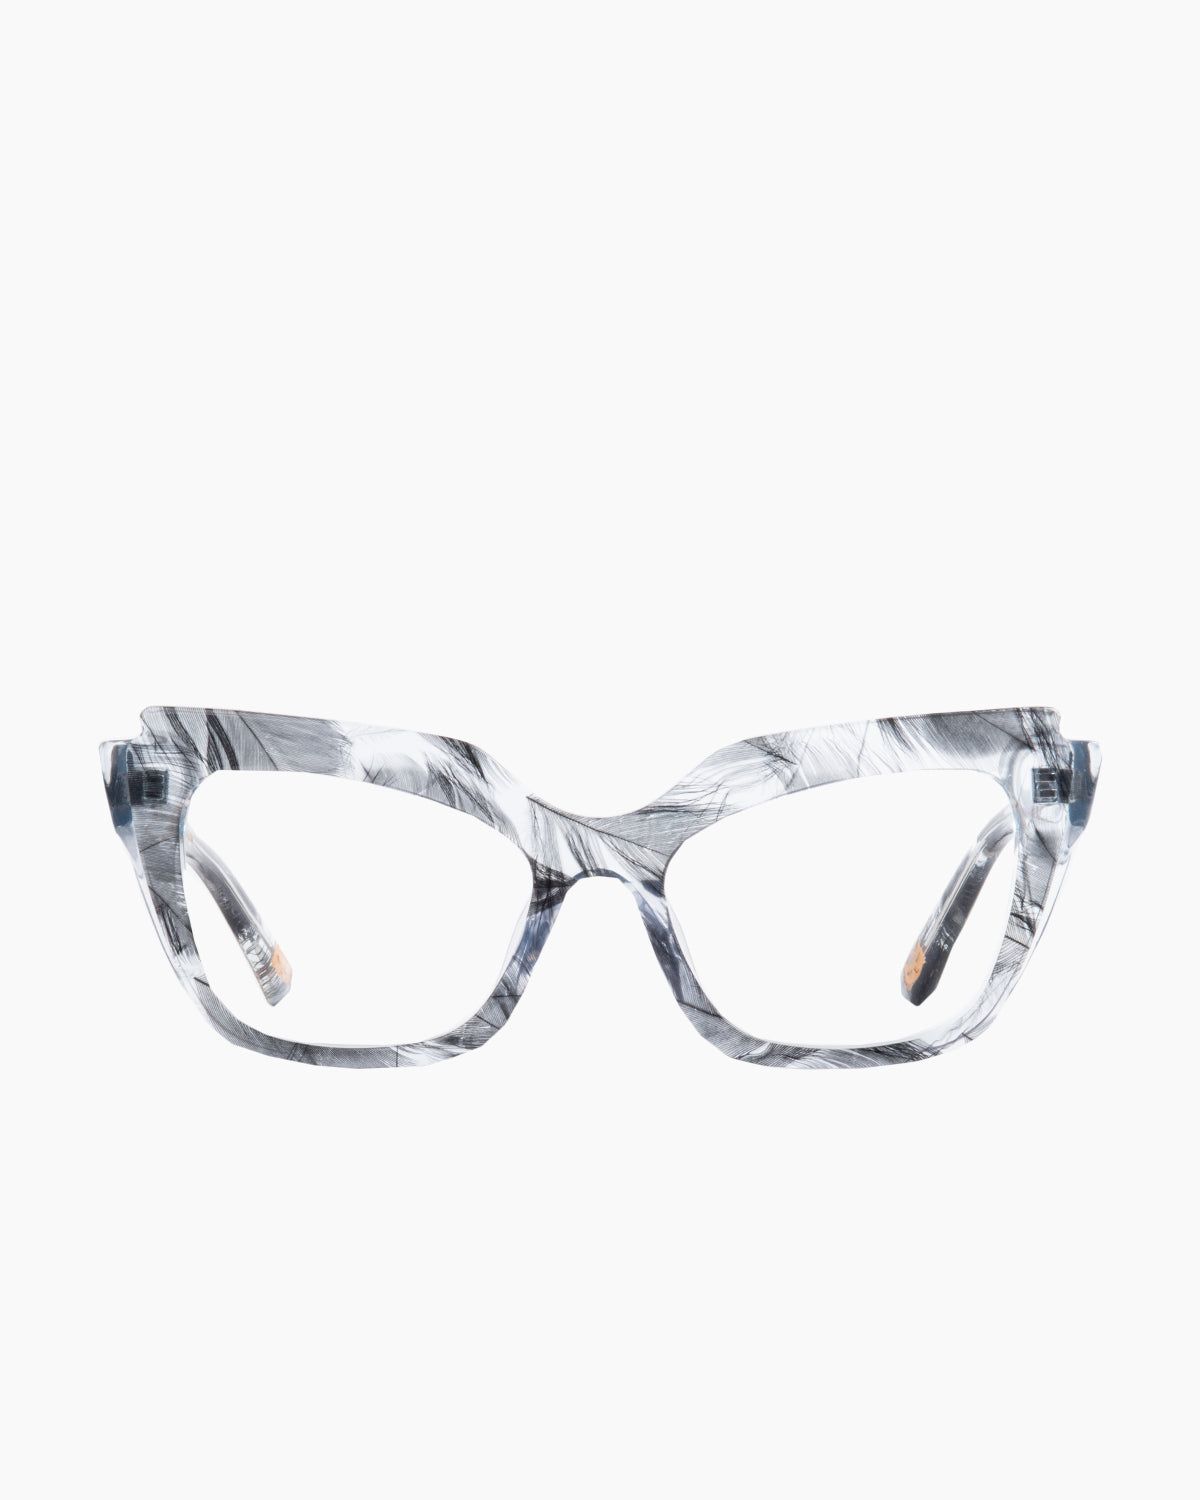 Spectacleeyeworks - Parisa - c459 | glasses bar:  Marie-Sophie Dion